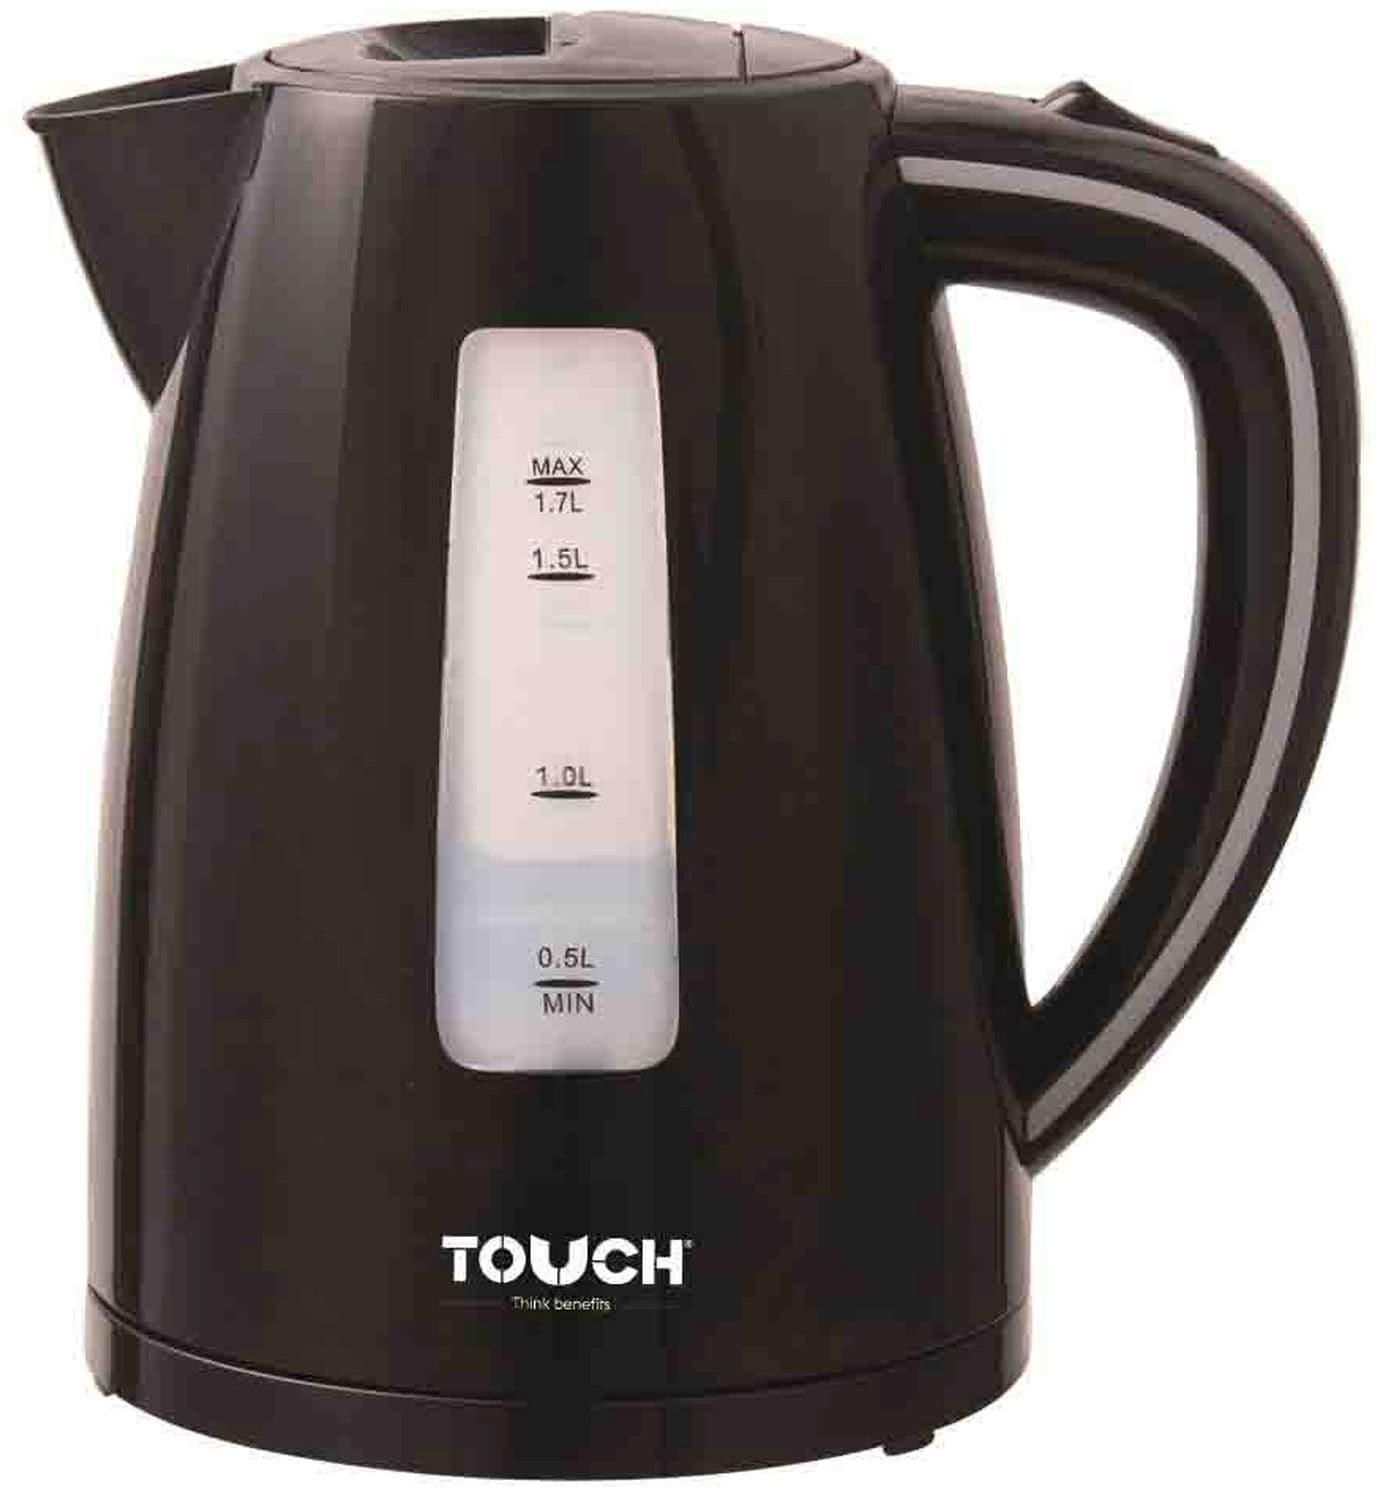 Touch Electric Kettle - 1.7 Liter - 2200 Watt - Black - 40306